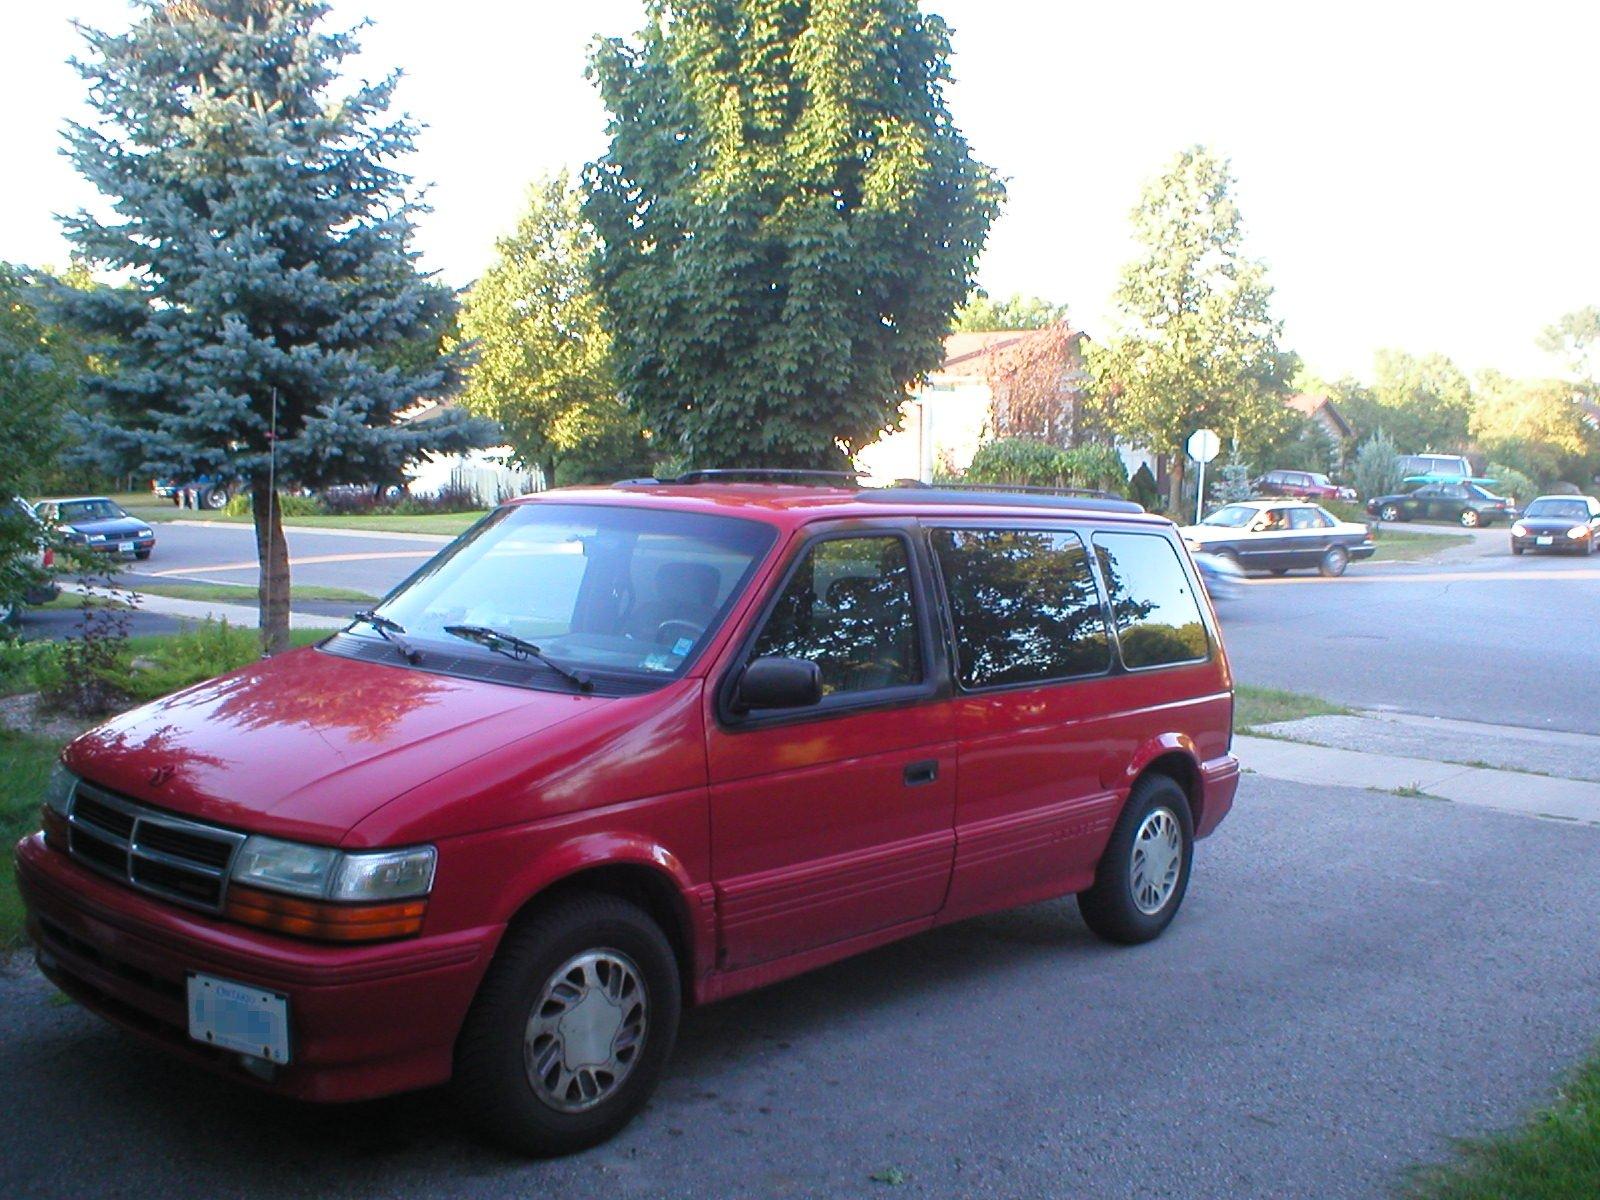 Красный караван. Dodge Caravan 1992. Додж Караван 1992г. Додж Караван красный 1992. Dodge Caravan 2 1992.